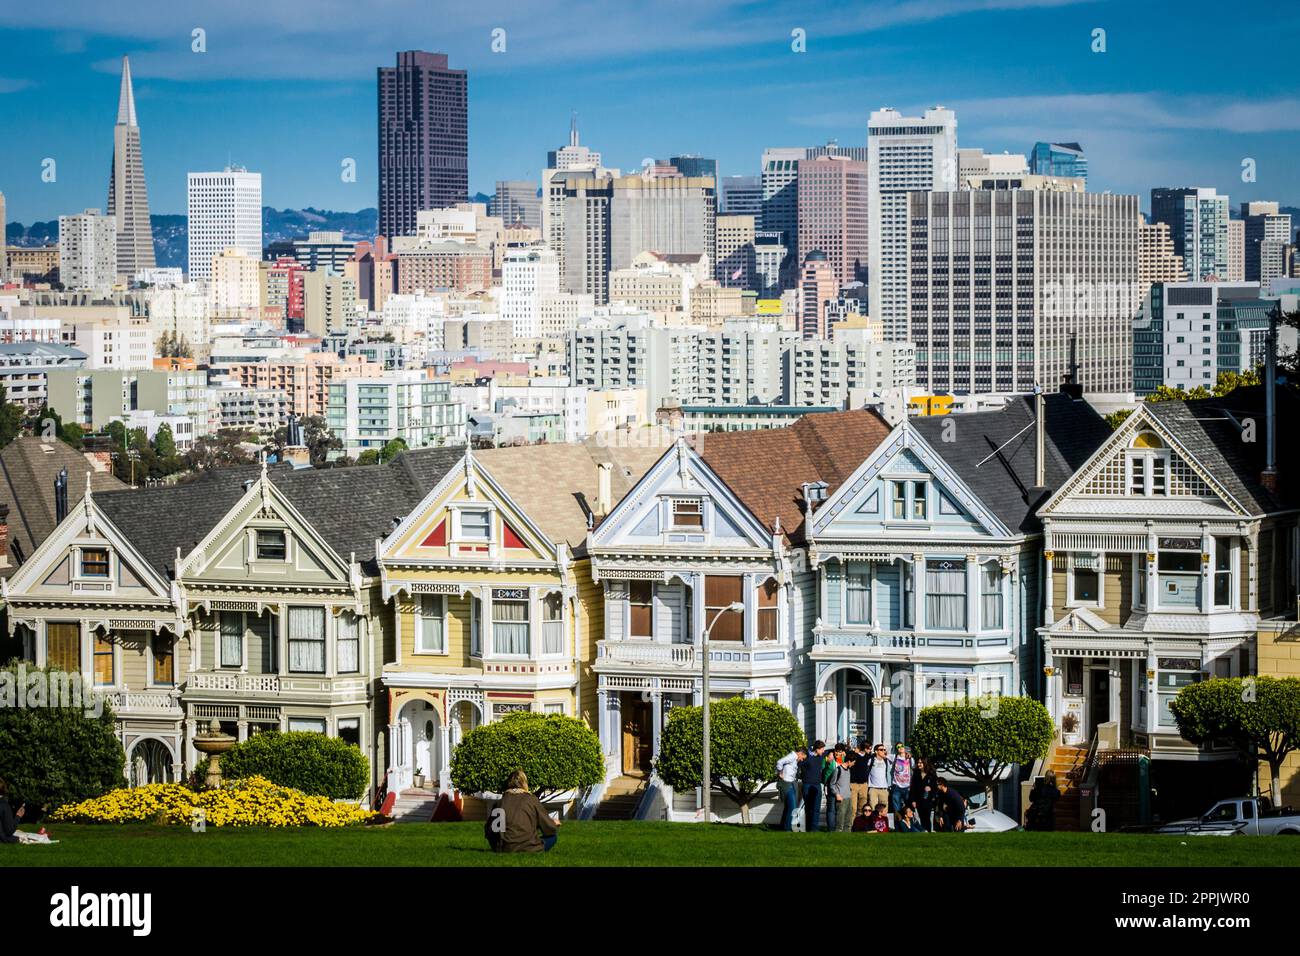 Vista en las casas victorianas pintadas de las damas de San Francisco con paisaje urbano y horizonte en el fondo en un cielo azul. Gente sentada delante Foto de stock